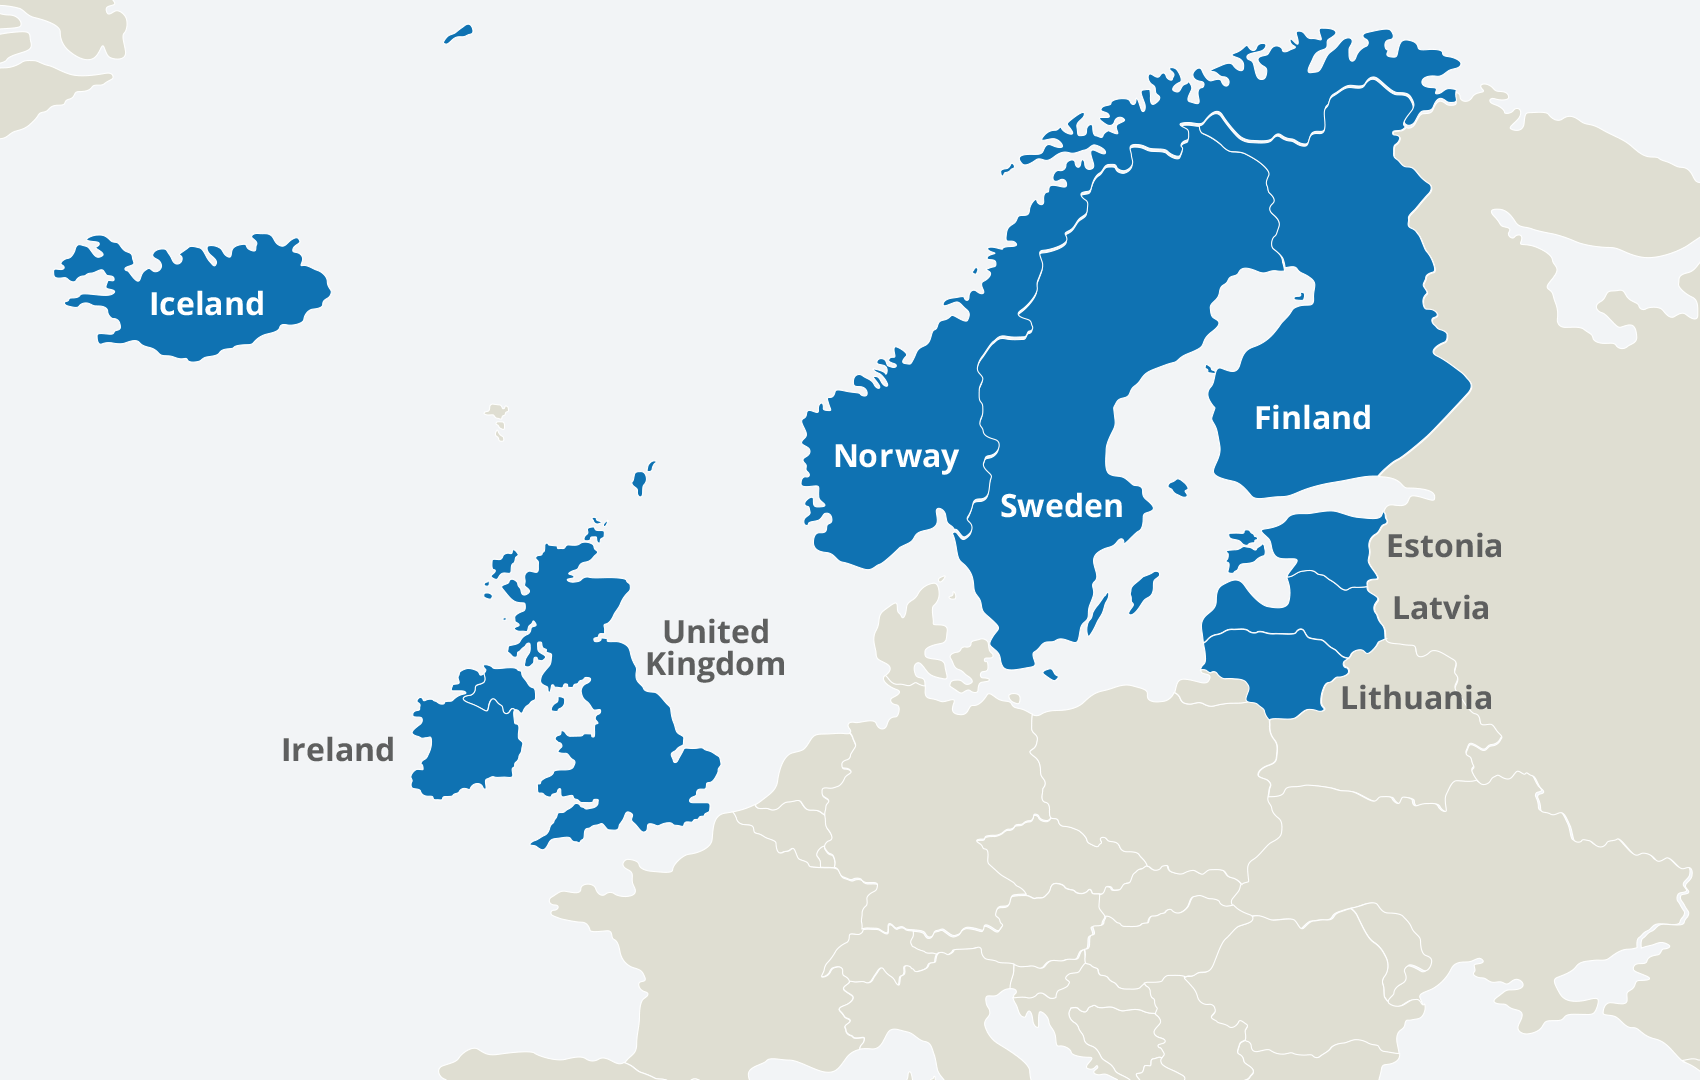 عدد دول اوروبا الاحصائيه لعام 2021 المسافرون الى اوروبا